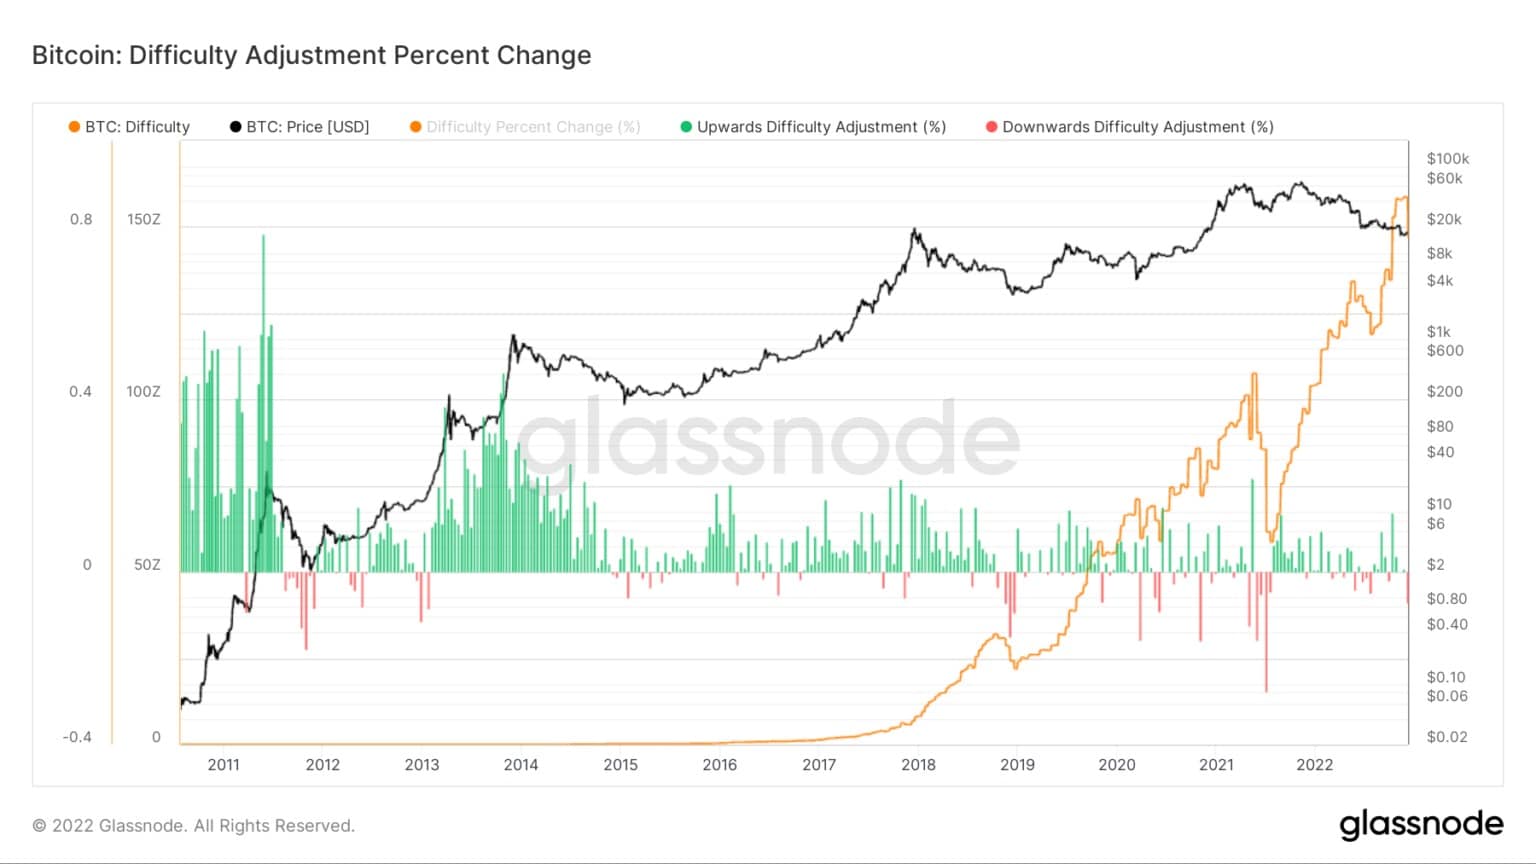 Grafiek met Bitcoin's mijnbouwmoeilijkheidsaanpassing procentuele verandering van 2011 tot 2022 (Bron: Glassnode)